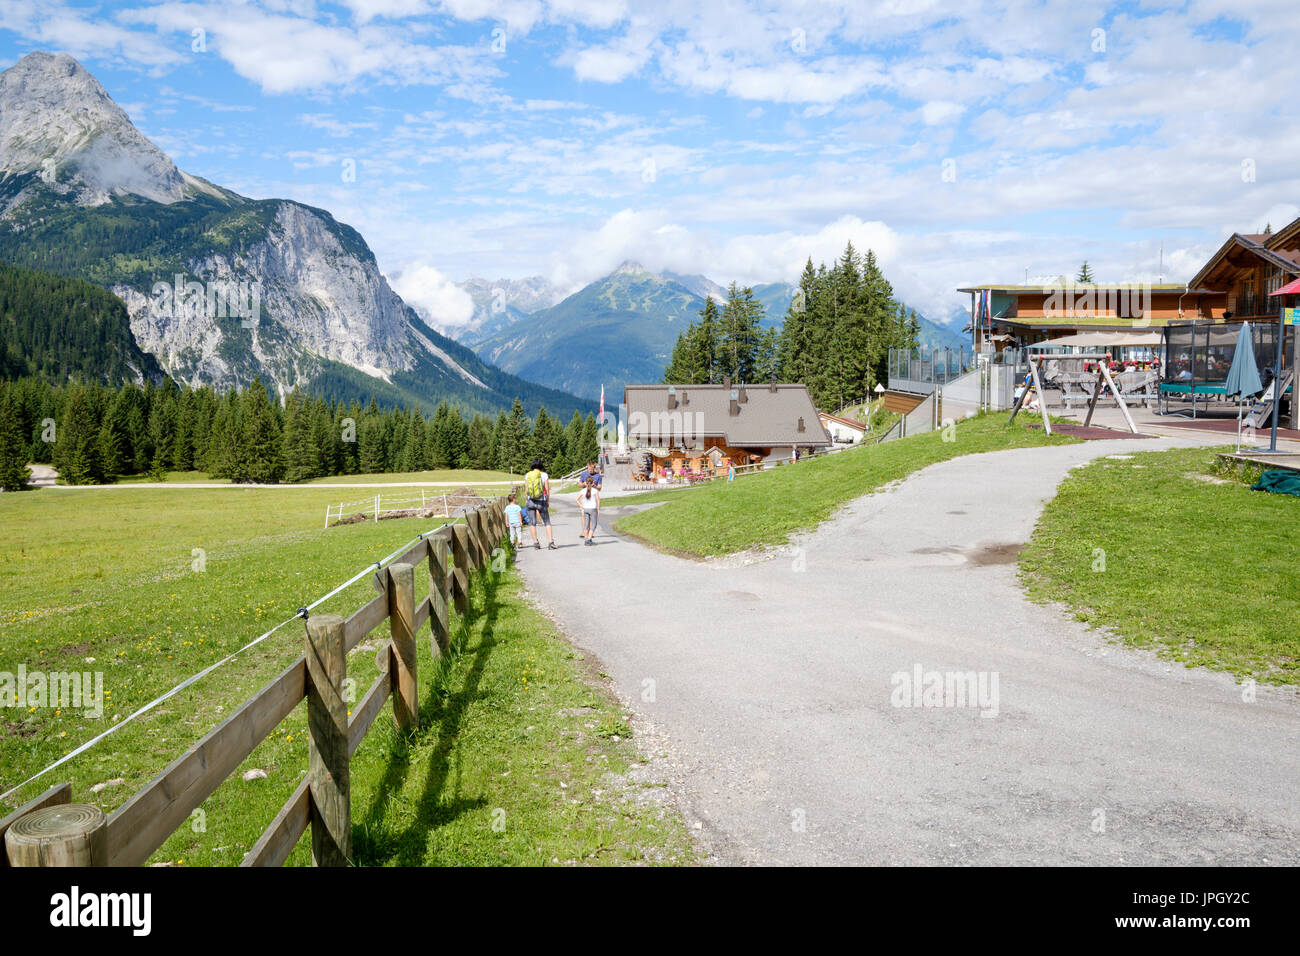 Ehrwalder Alm, Ehrwald, Tyrol, Austria Stock Photo